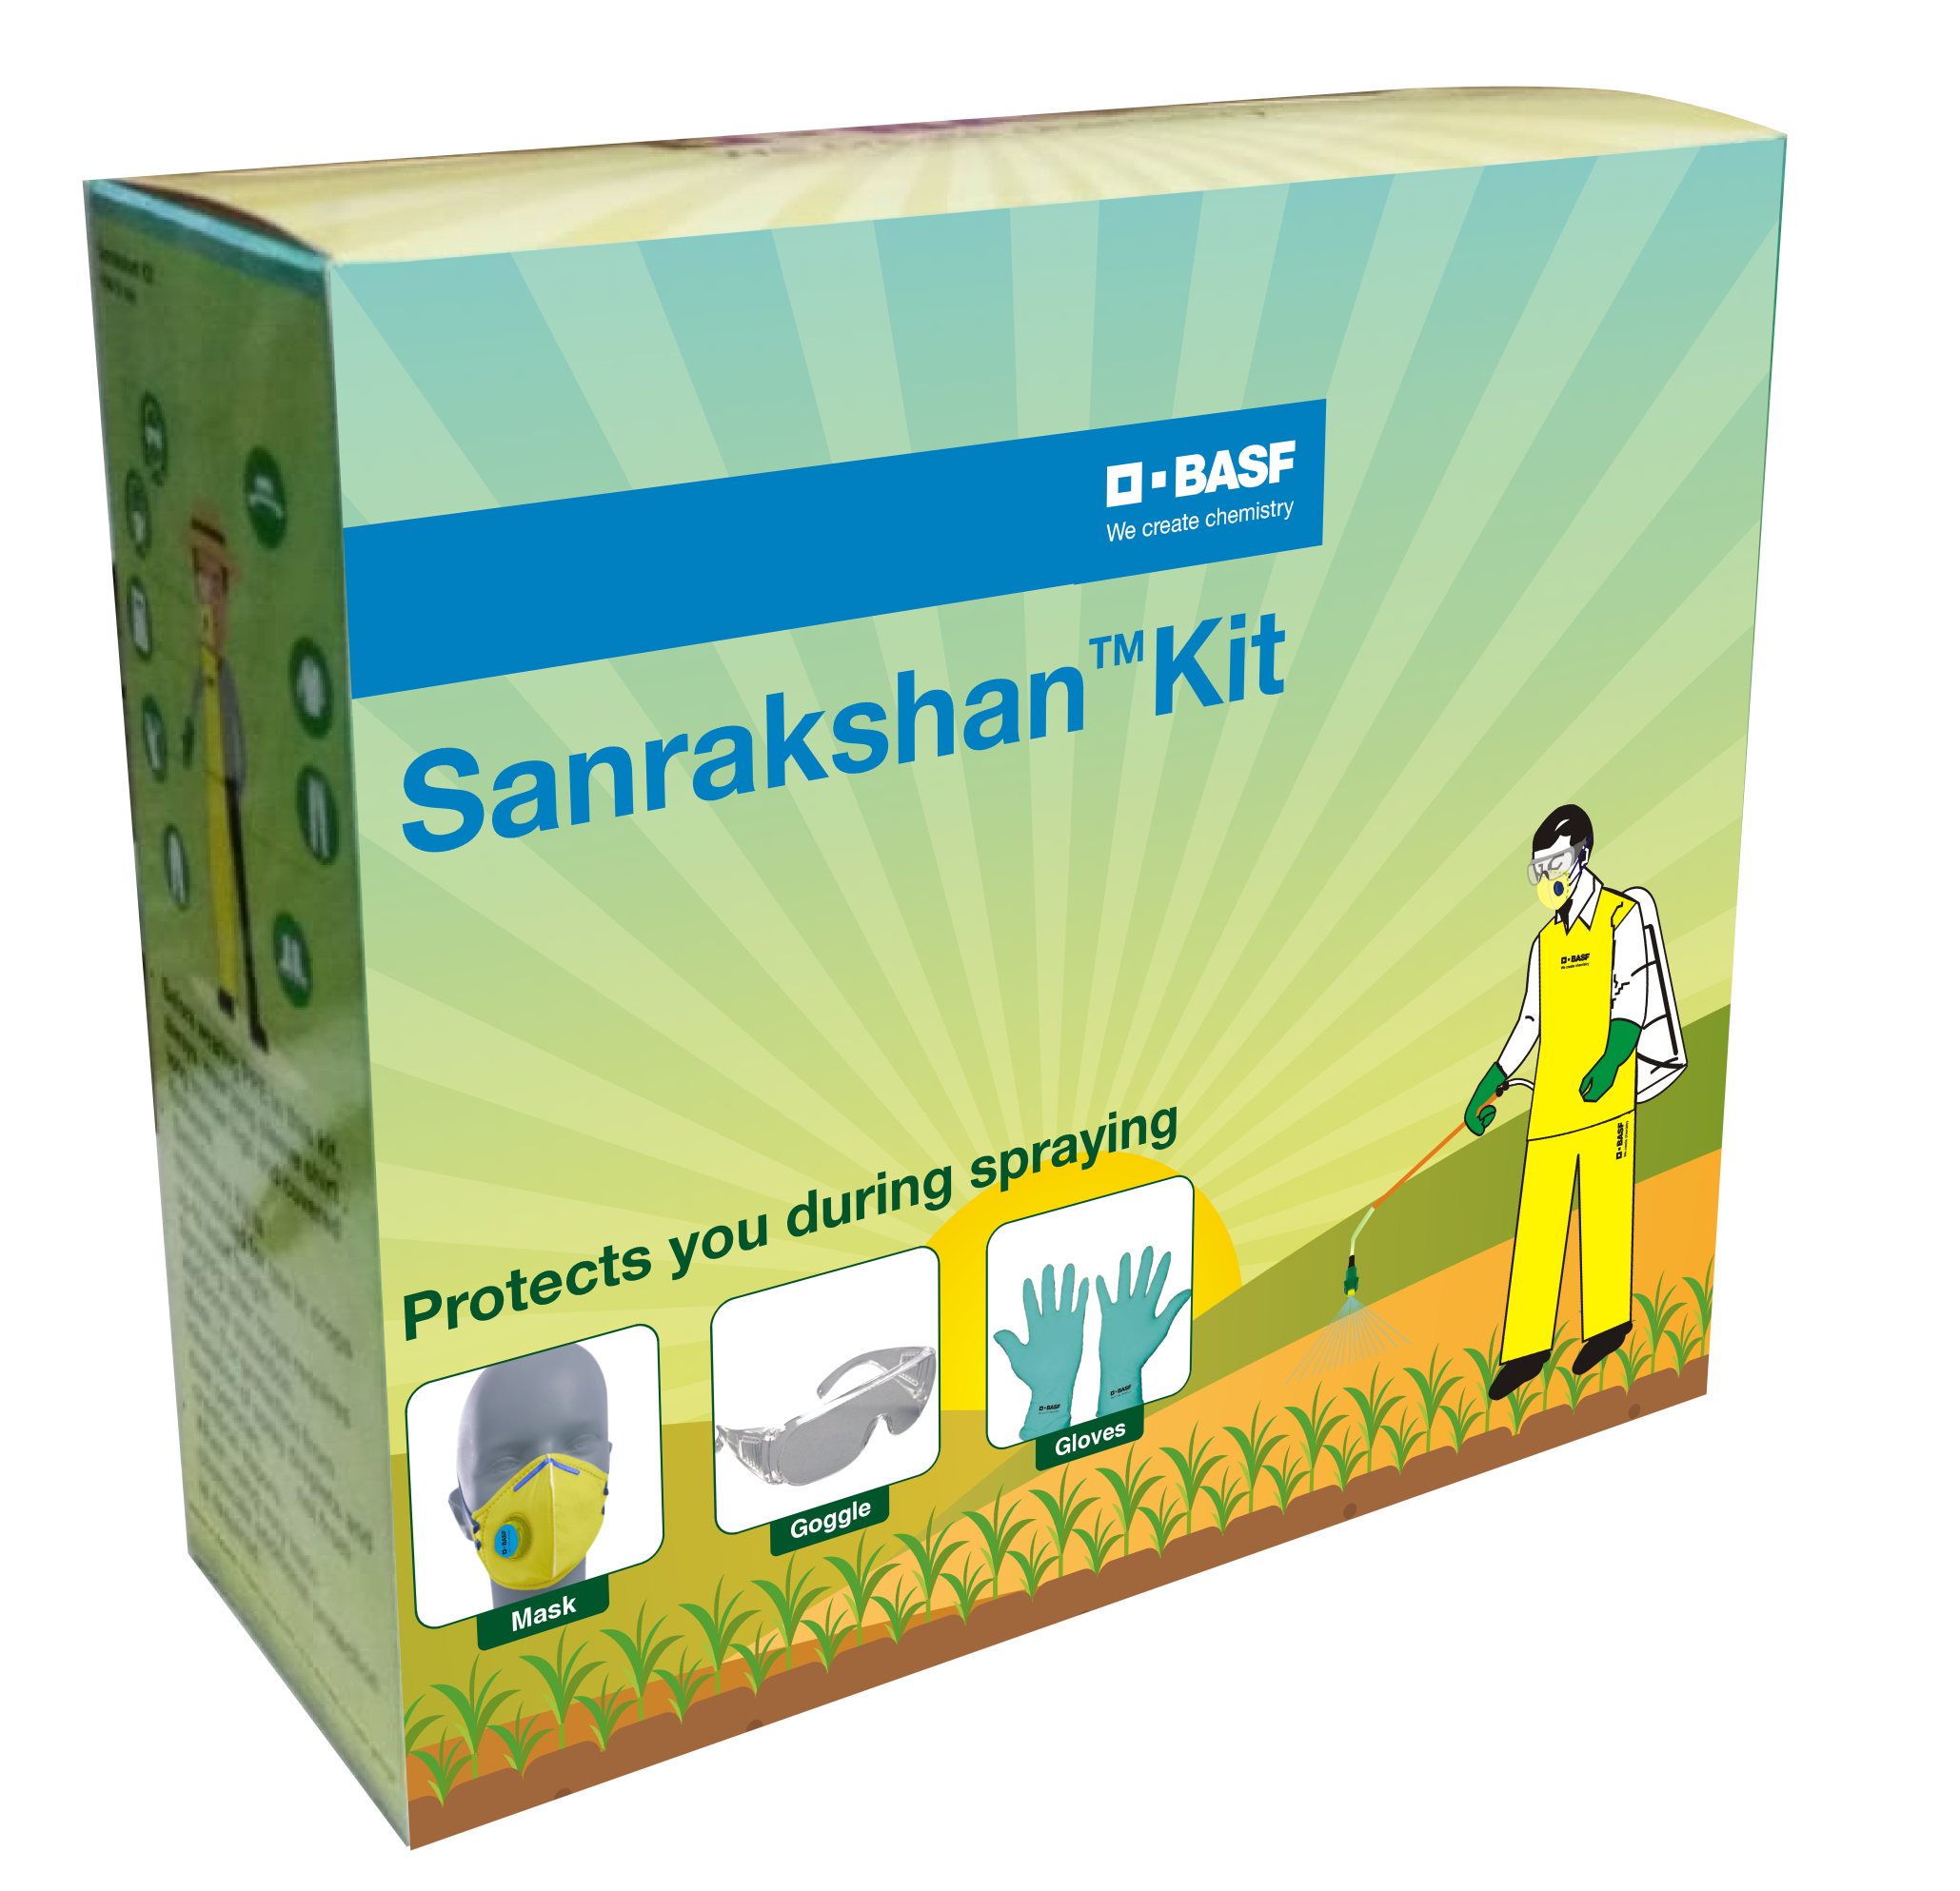 Sanrakshan Kit